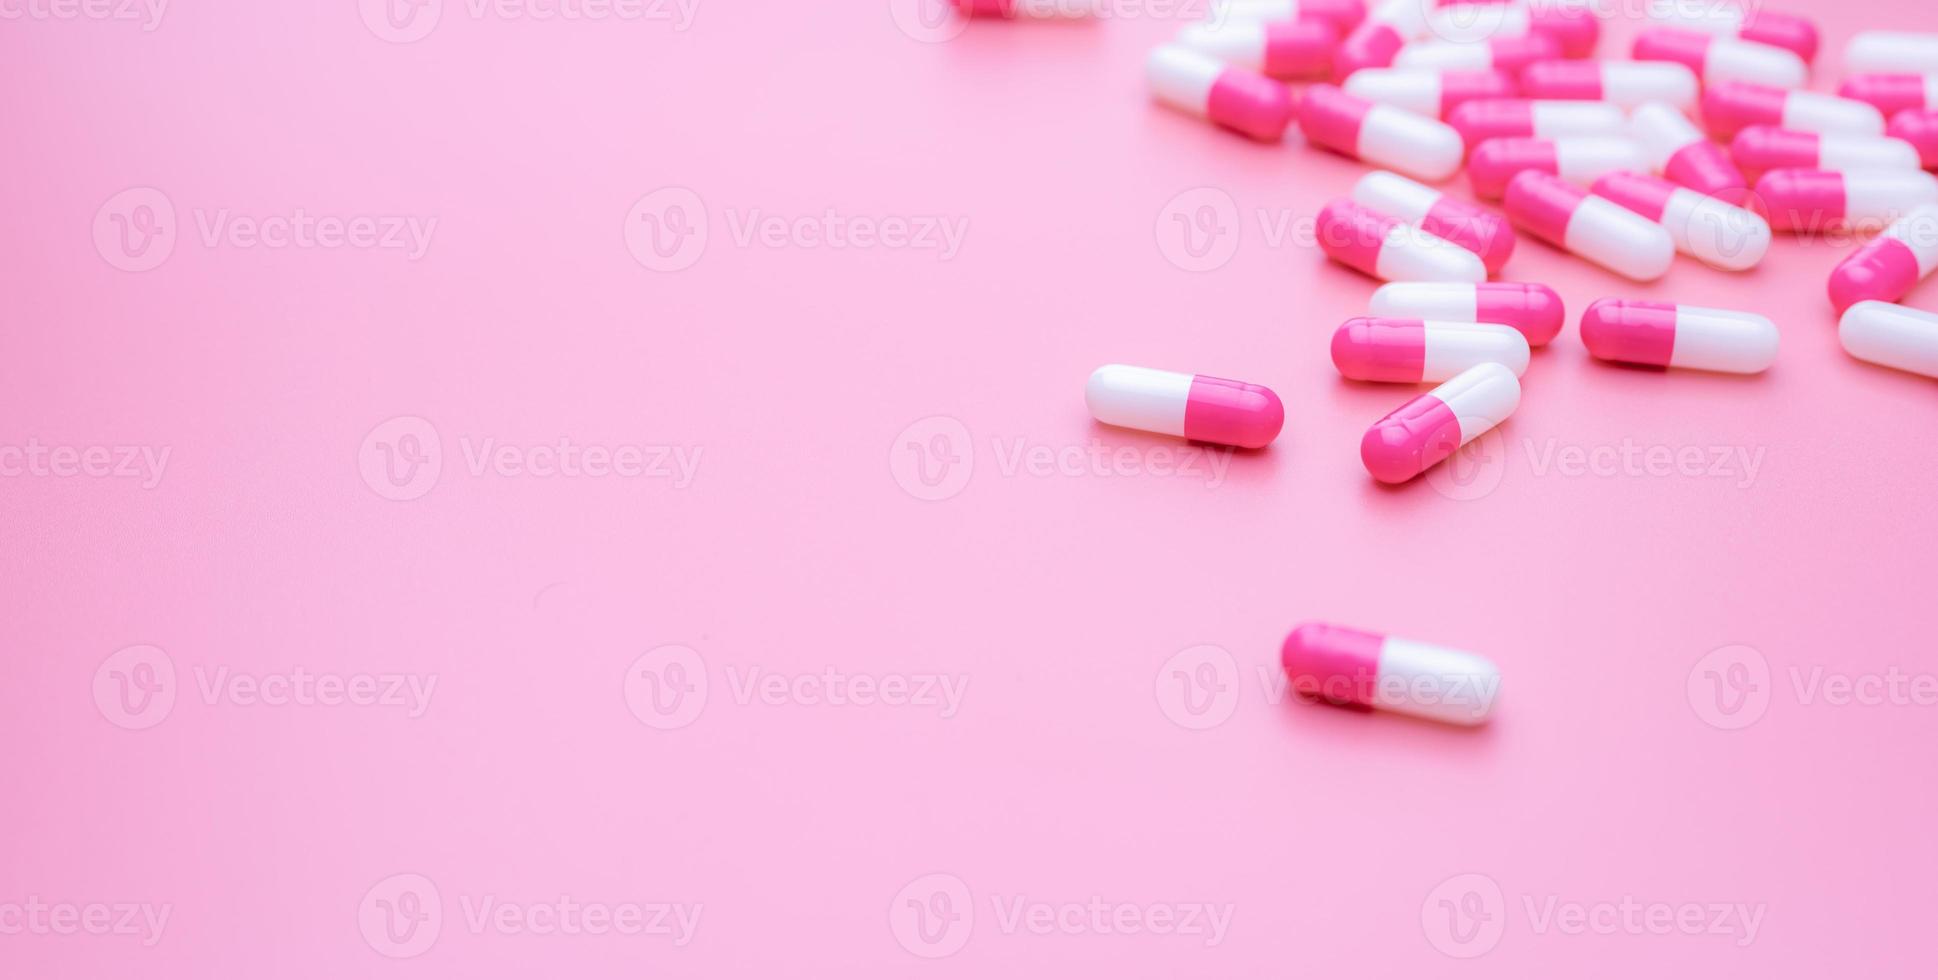 roze-witte antibioticum capsules pil verspreid op roze achtergrond. antibioticum resistentie concept. slim gebruik van antibiotica. antimicrobieel medicijn. gezondheidsbudget en beleid. farmaceutische industrie. foto